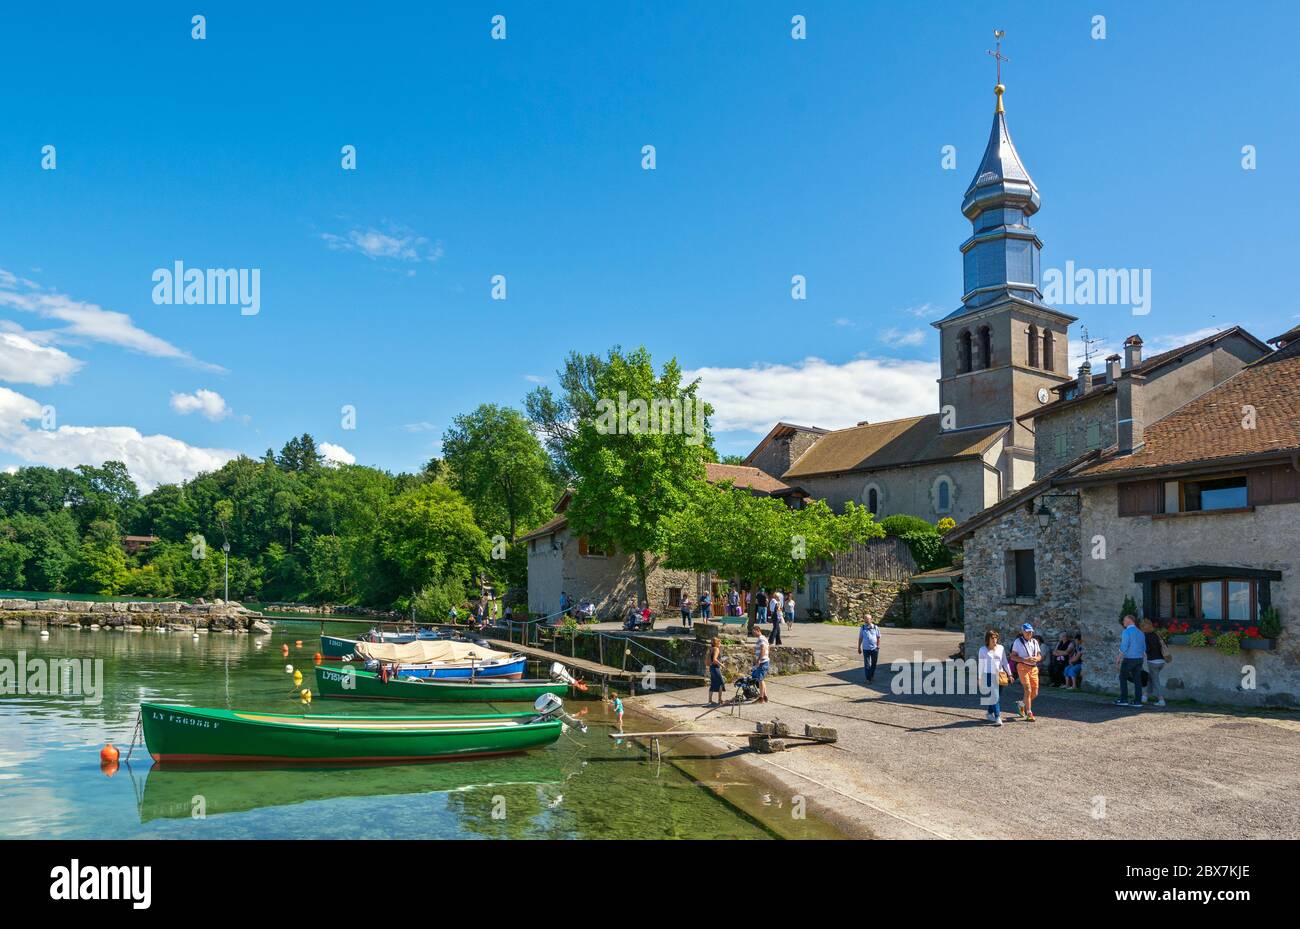 France, Yvoire, Port des Pecheurs (fishermen's harbor), Lake Geneva (Lac Leman), St. Pancrace chuirch Stock Photo